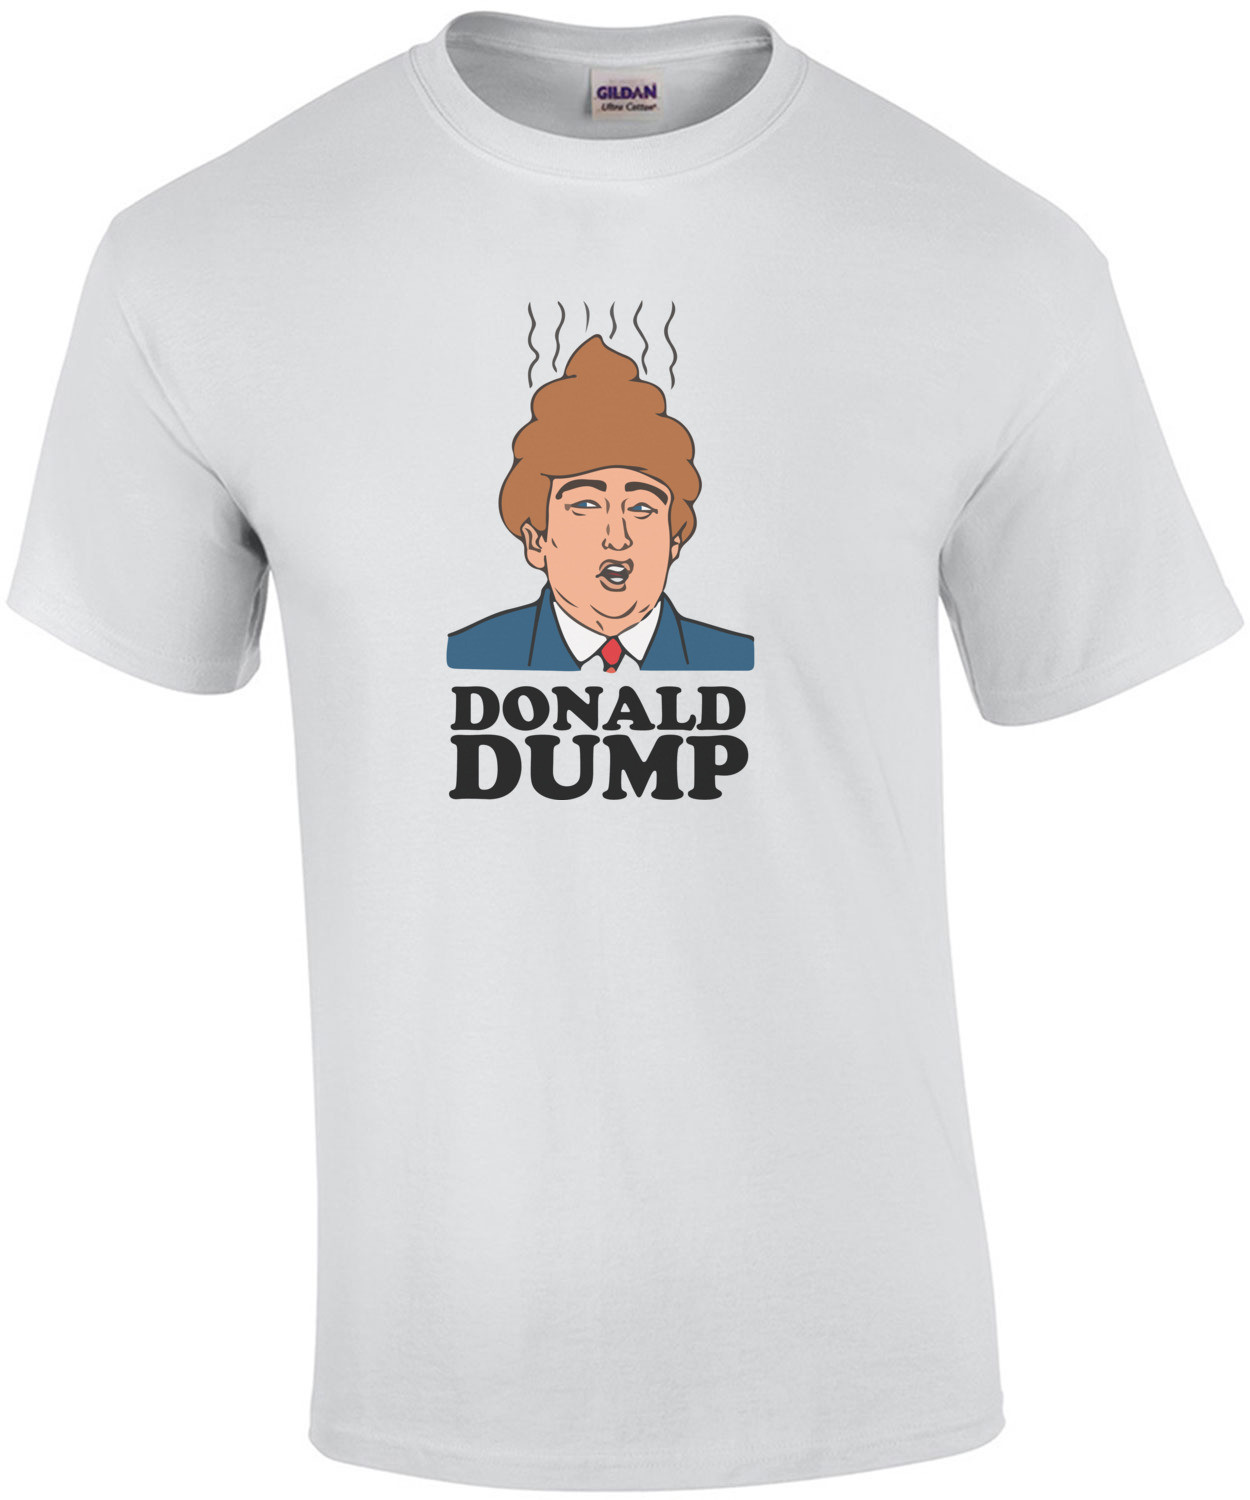 Donald Dump - Anti-Donald Trump T-Shirt